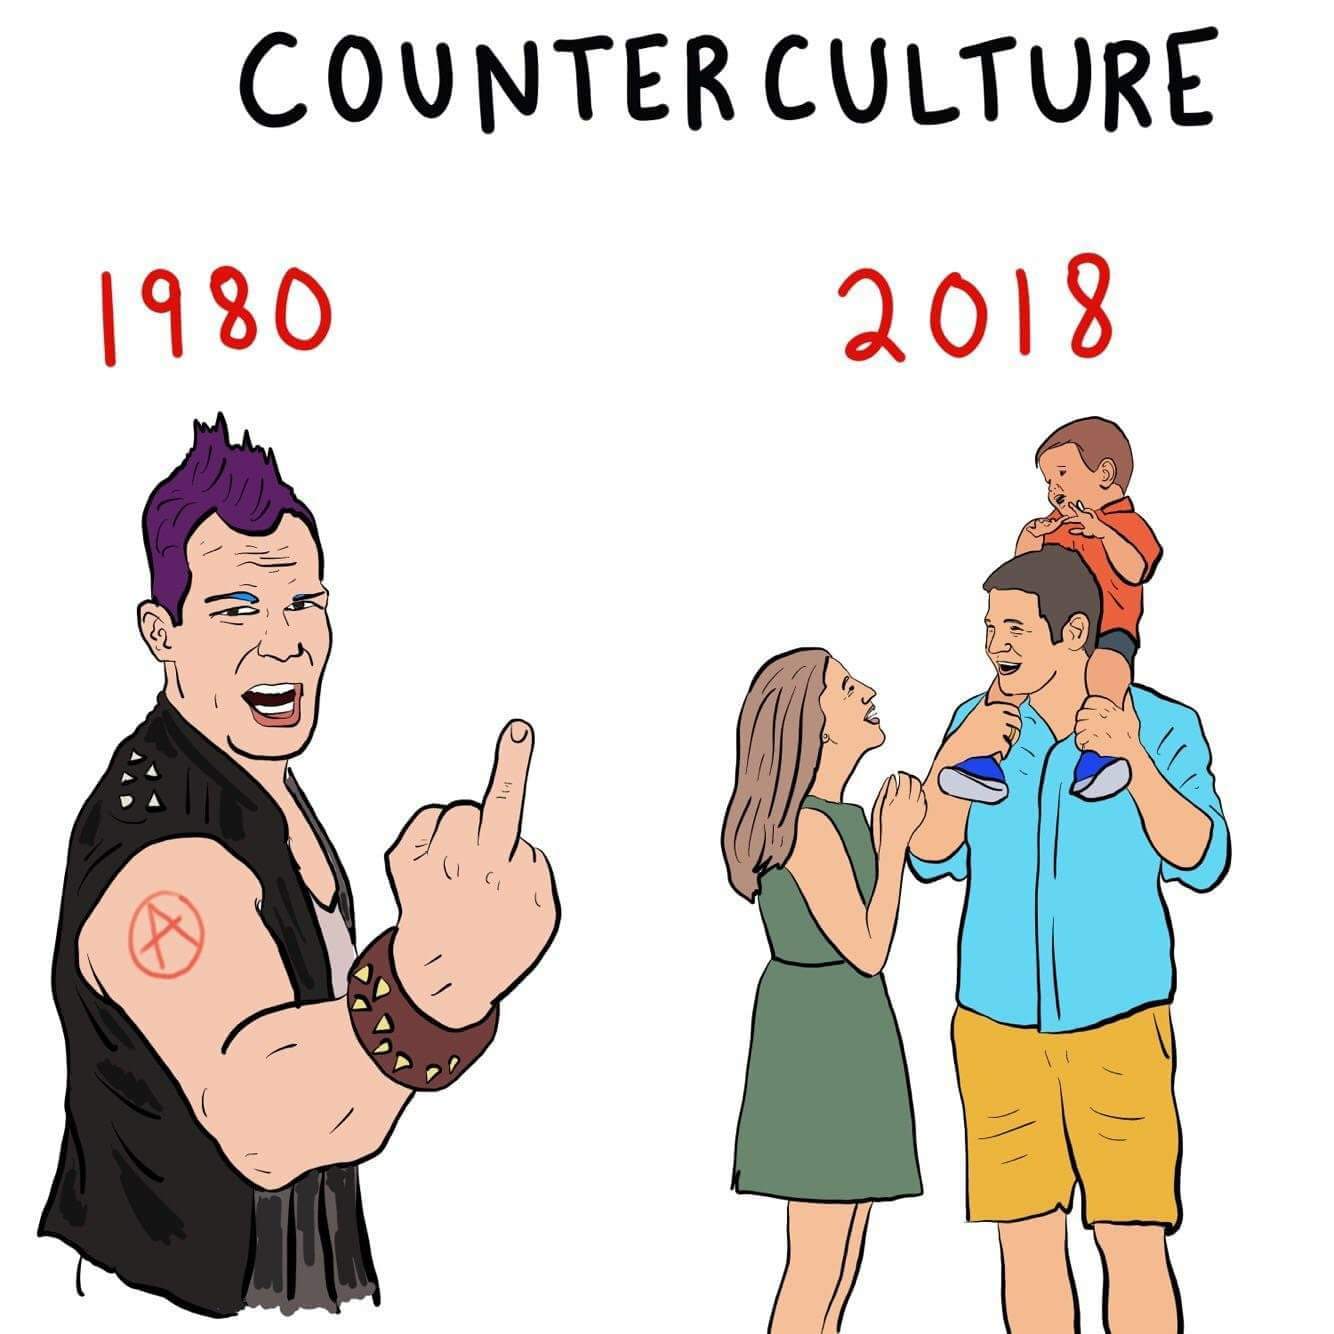 dongs in a culture - meme